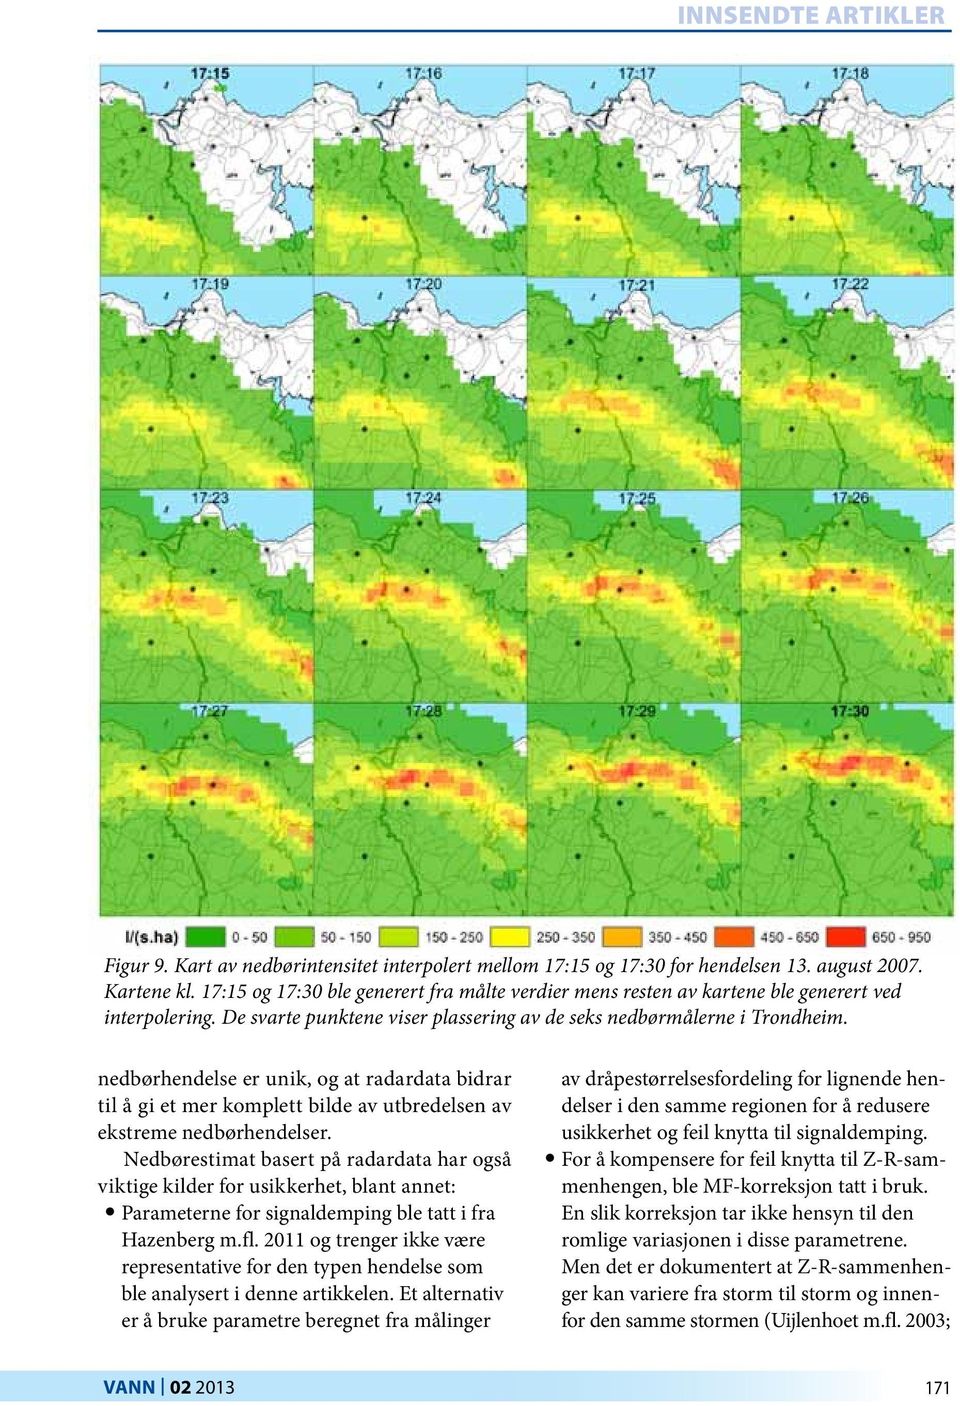 nedbørhendelse er unik, og at radardata bidrar til å gi et mer komplett bilde av utbredelsen av ekstreme nedbørhendelser.